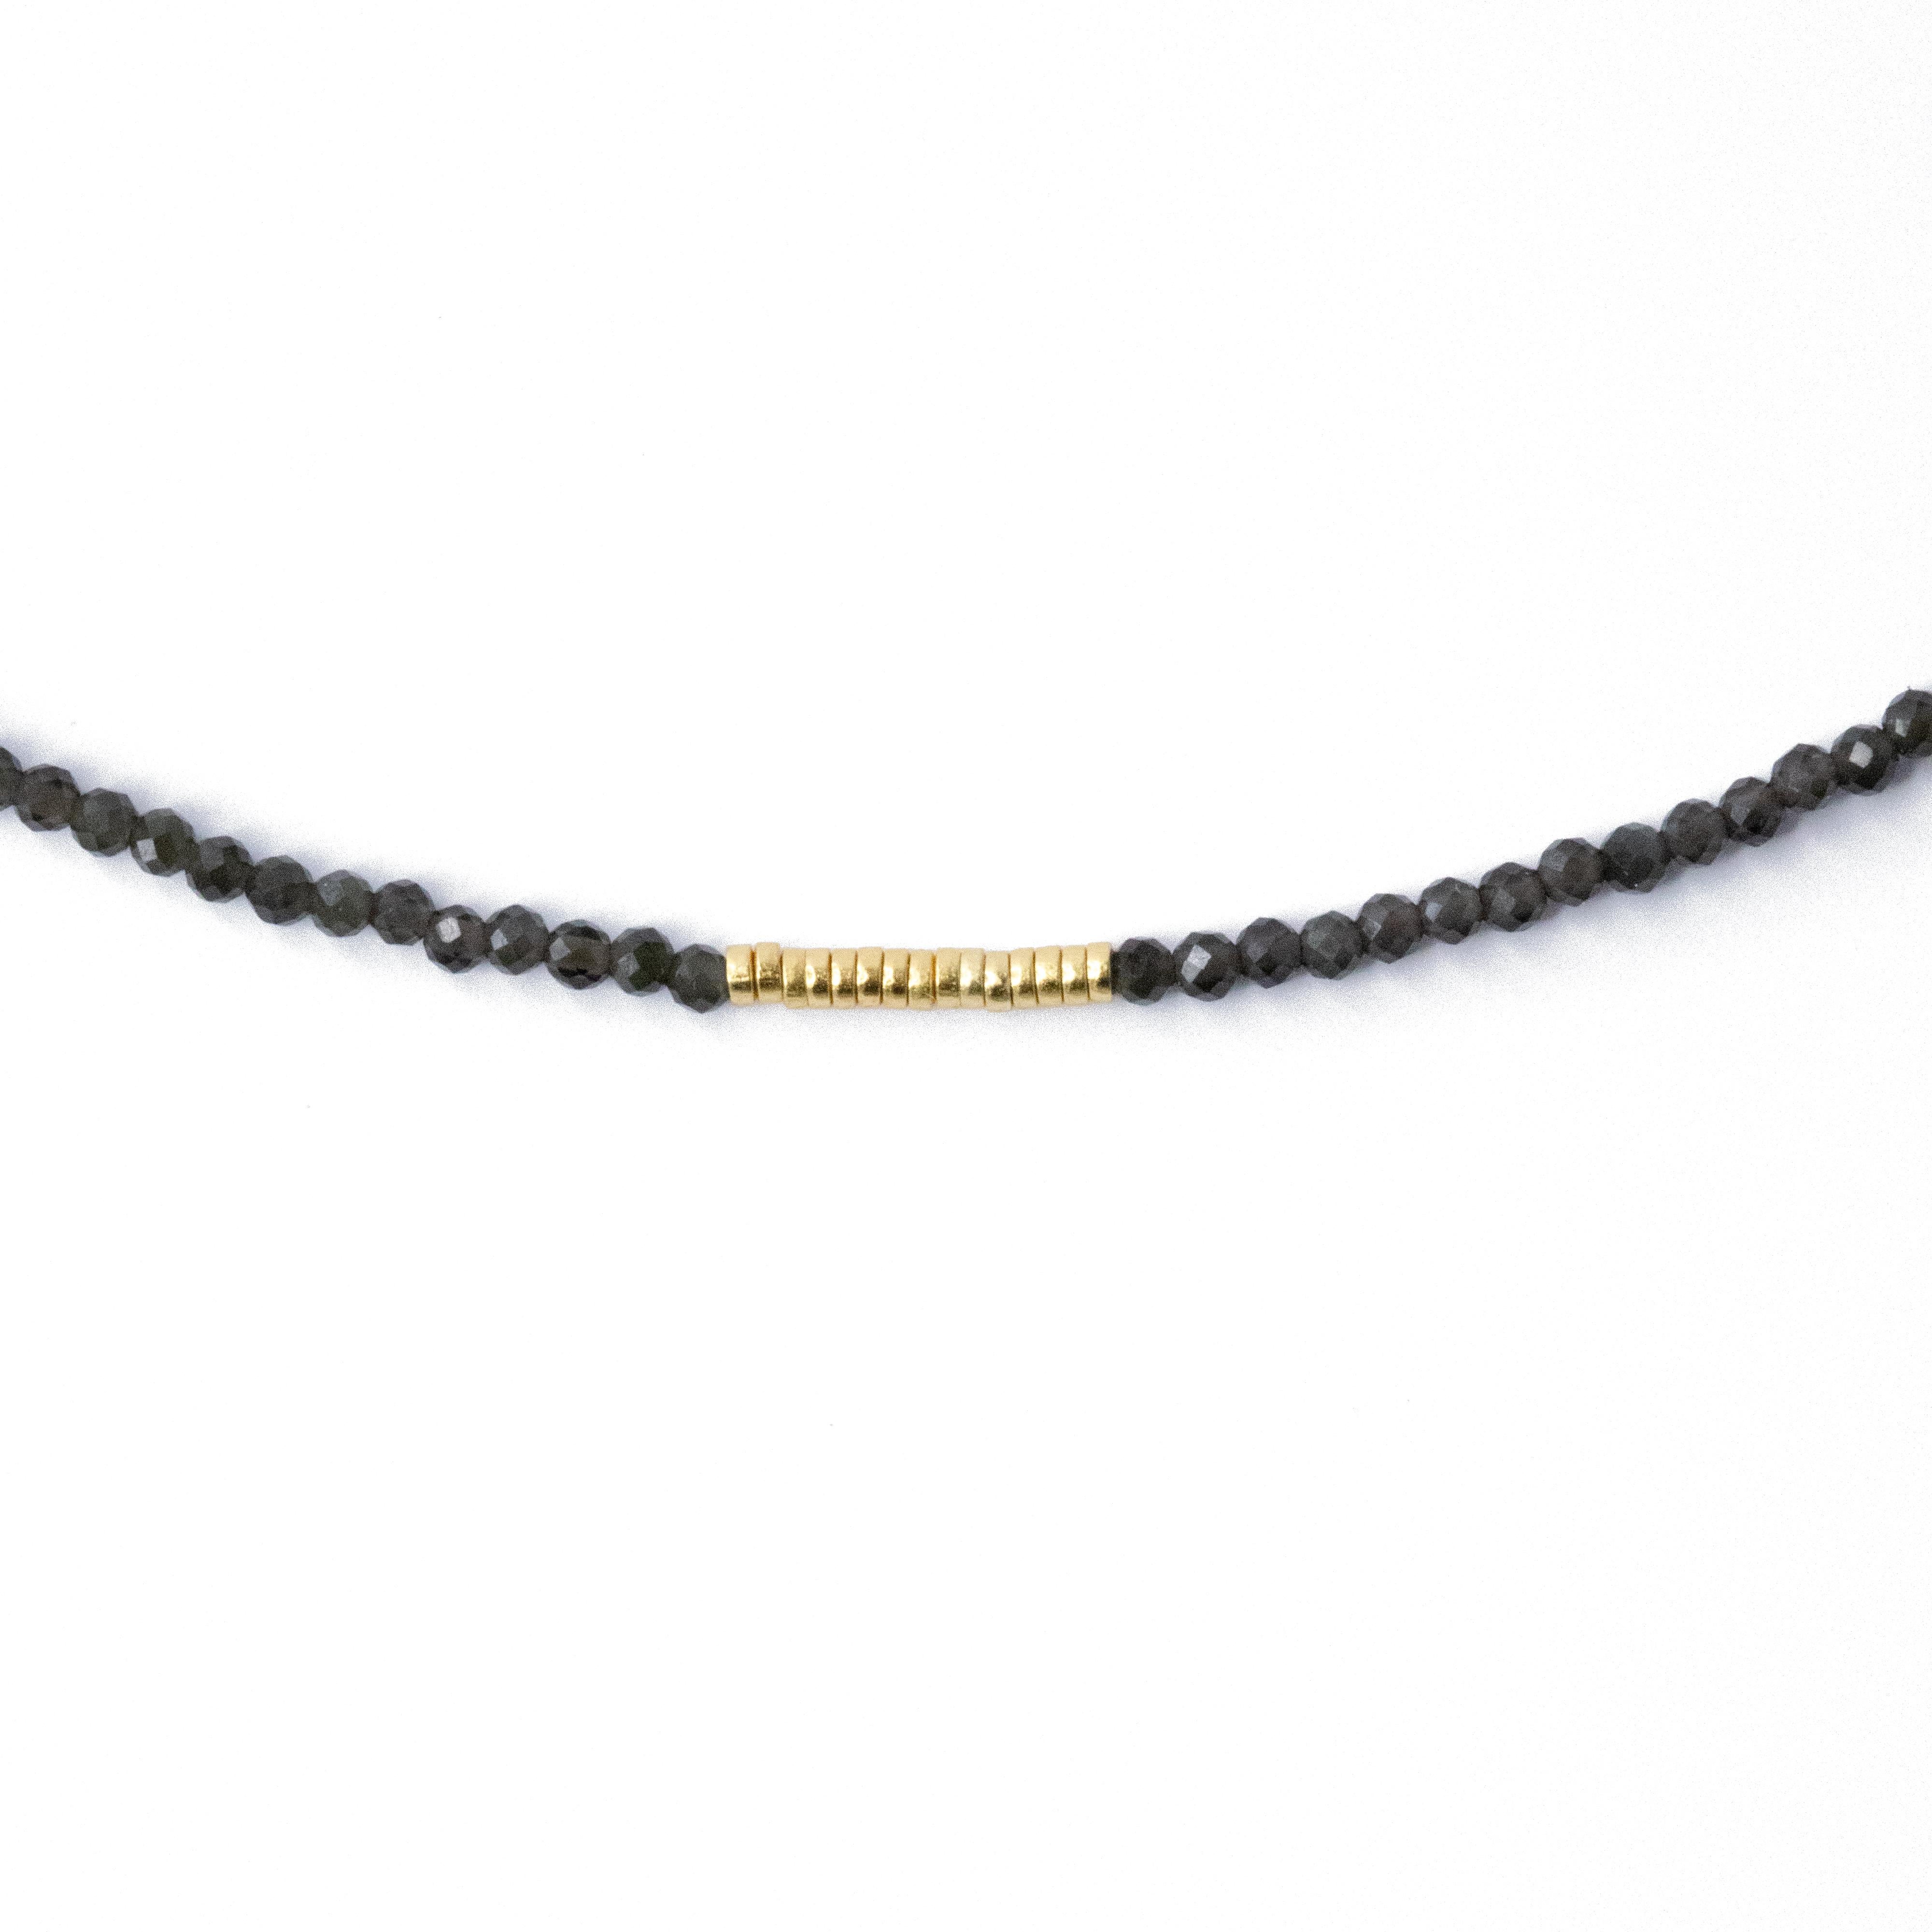 Diese zarte Tiny Charcoal Obsidian Halskette ist eine perfekte Ergänzung für jede Schmucksammlung. Die Shiny Grey Mika besteht aus hochwertigen Goldperlen und verfügt über einen atemberaubenden facettierten Obsidianstein, der jedem Outfit einen